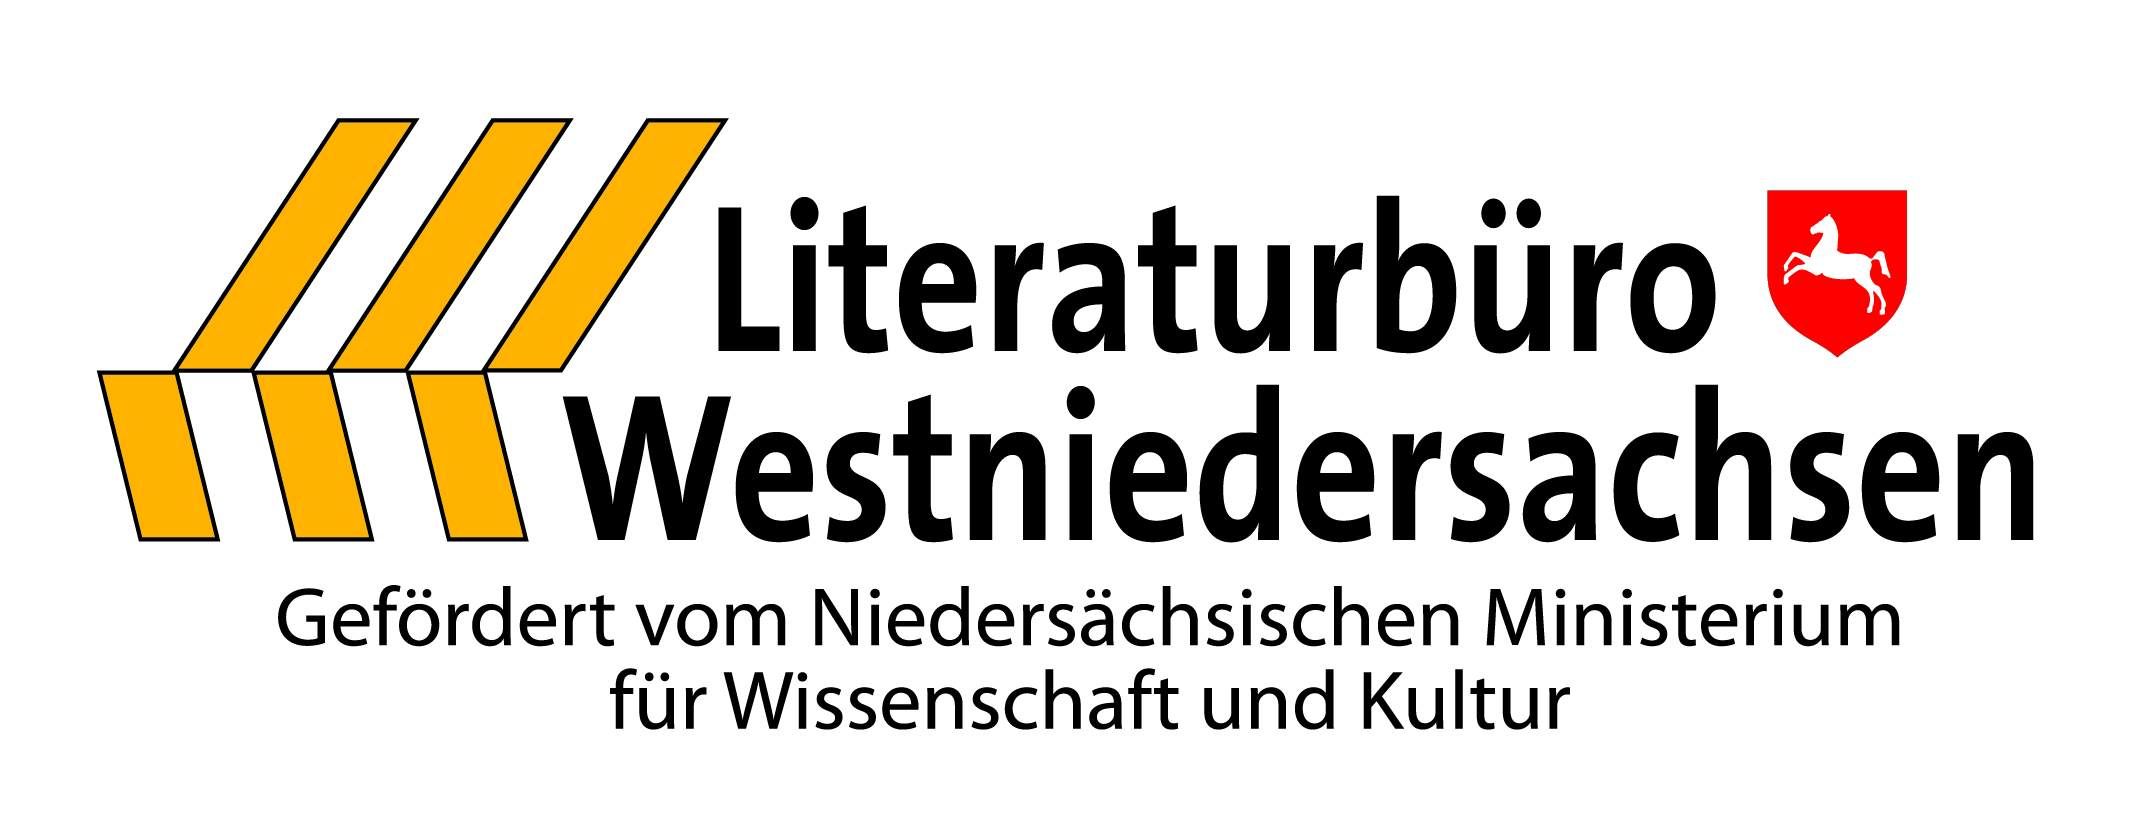 Literaturbüro Westniedersachsen